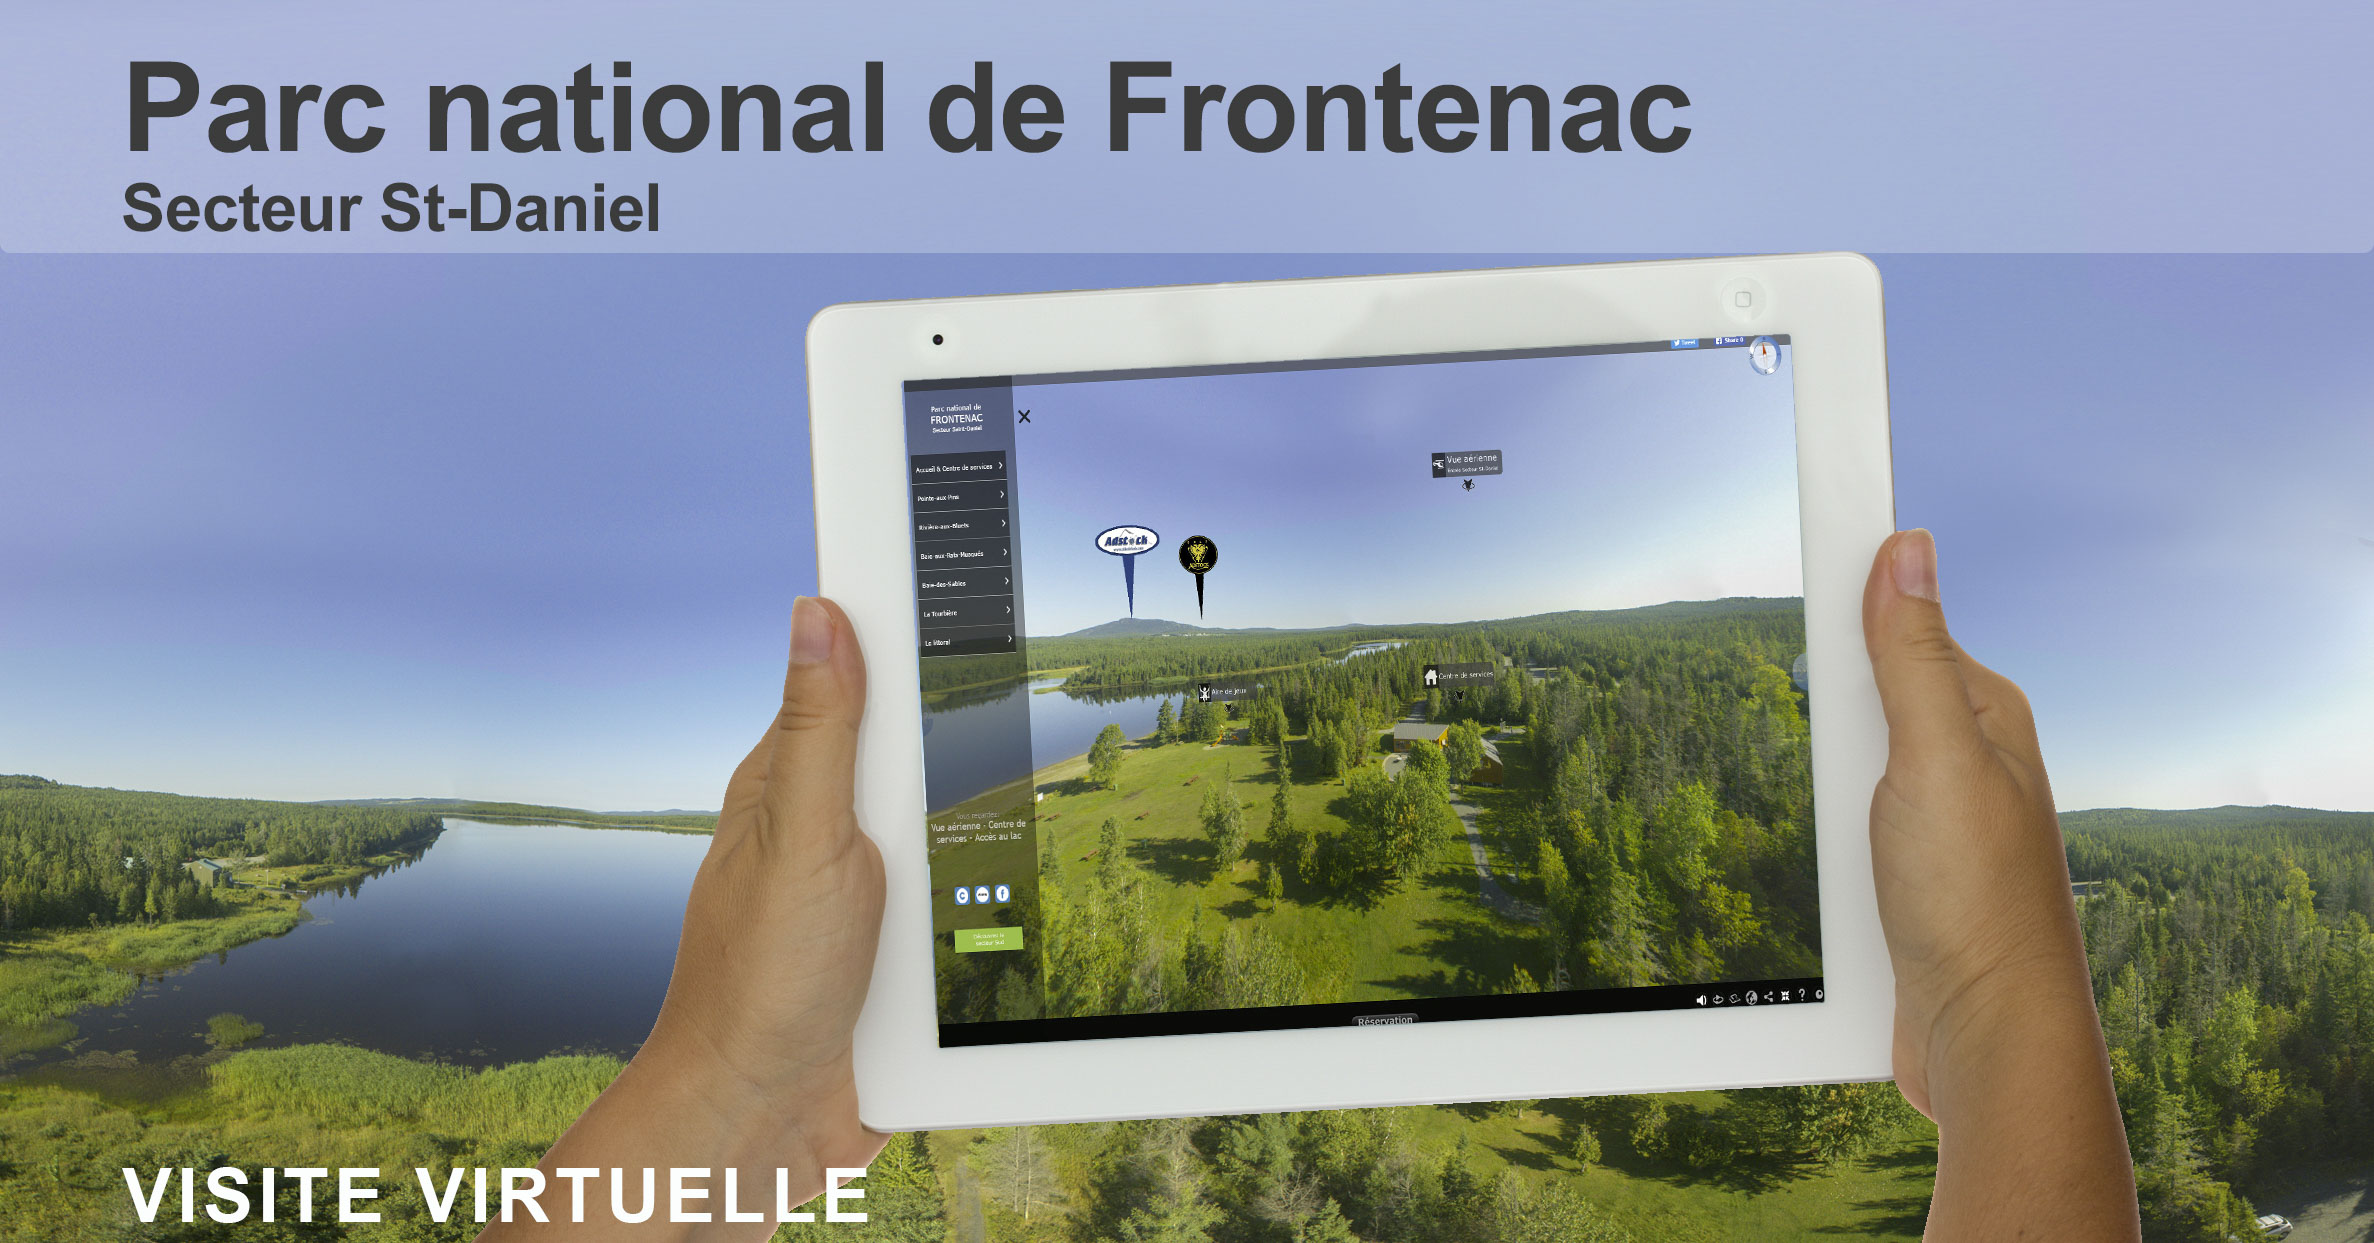 Visite virtuelle 360 degrés du Parc national de Frontenac secteur St-Daniel